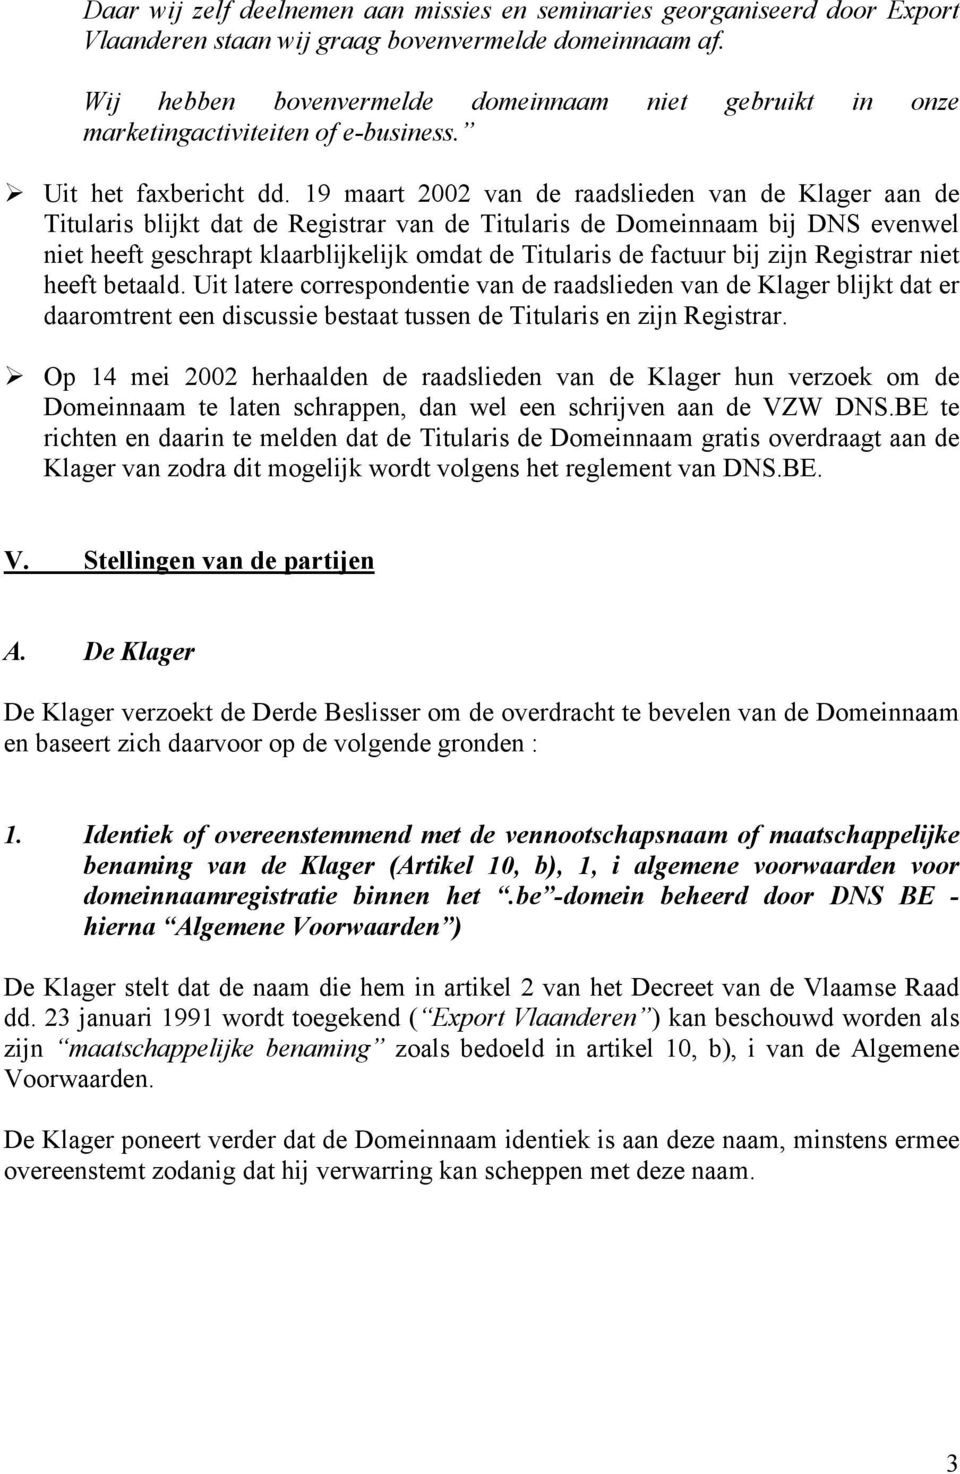 19 maart 2002 van de raadslieden van de Klager aan de Titularis blijkt dat de Registrar van de Titularis de Domeinnaam bij DNS evenwel niet heeft geschrapt klaarblijkelijk omdat de Titularis de